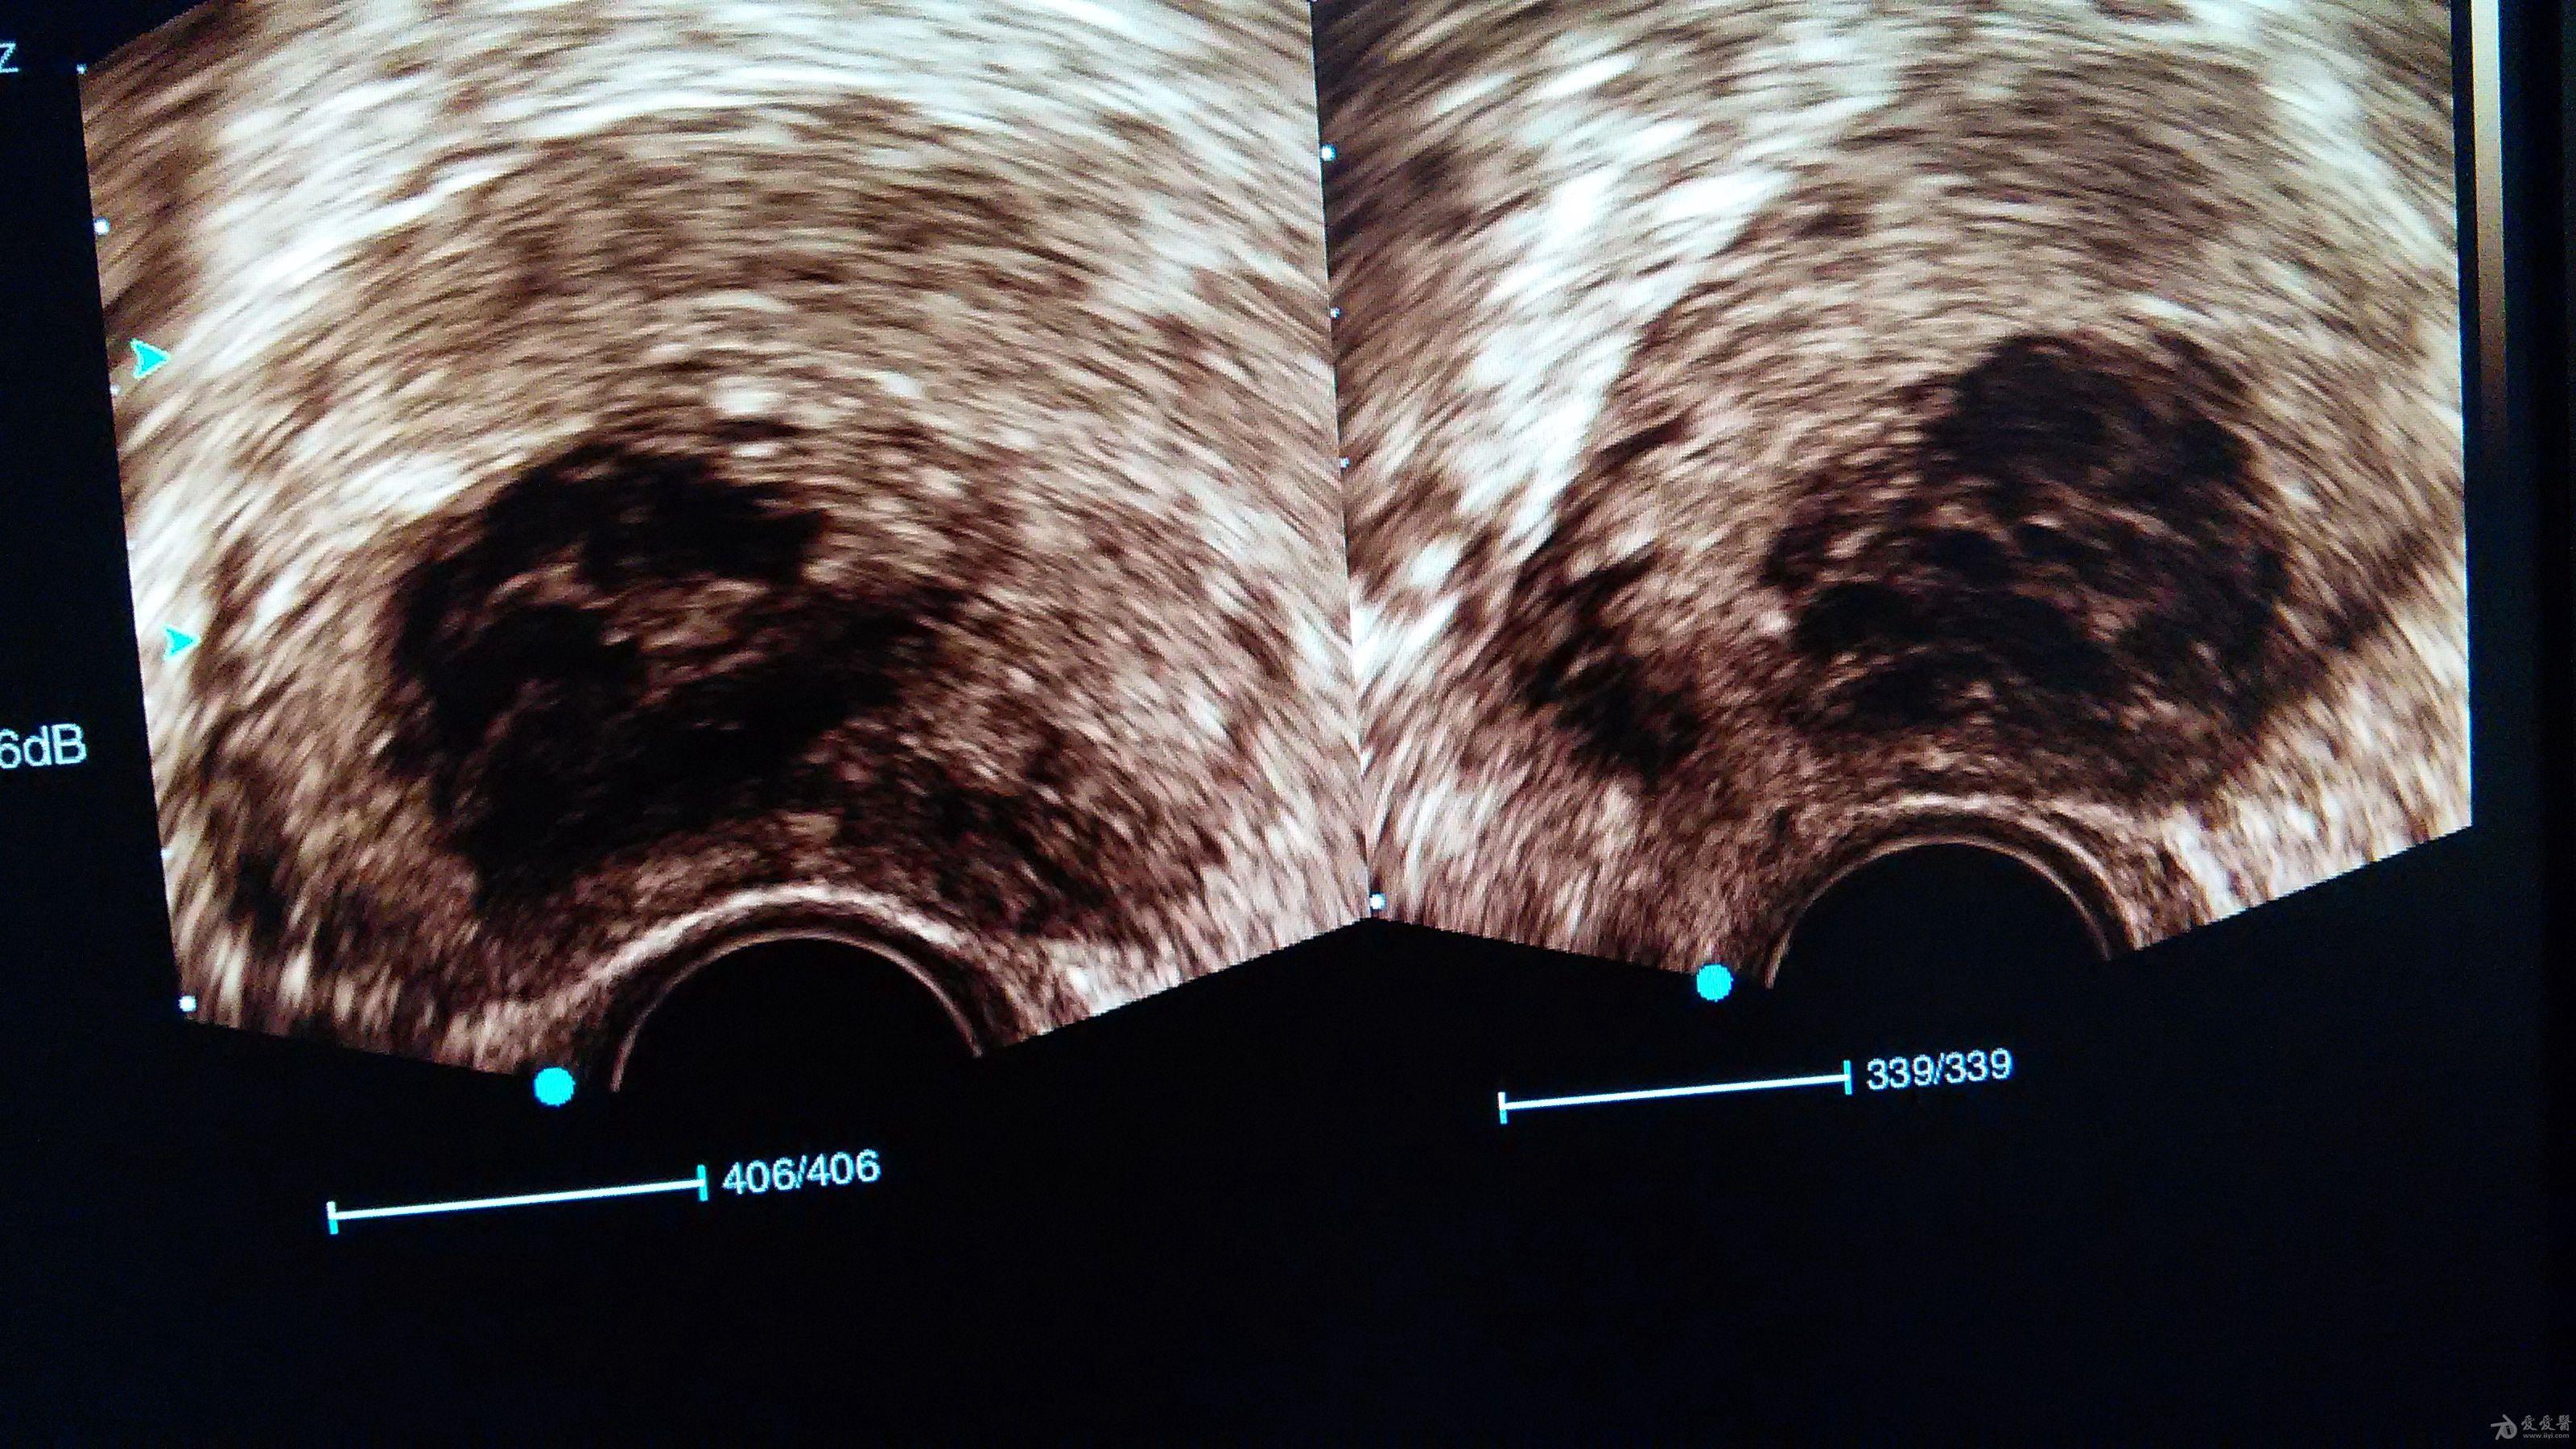 剖宫产瘢痕的超声图片图片